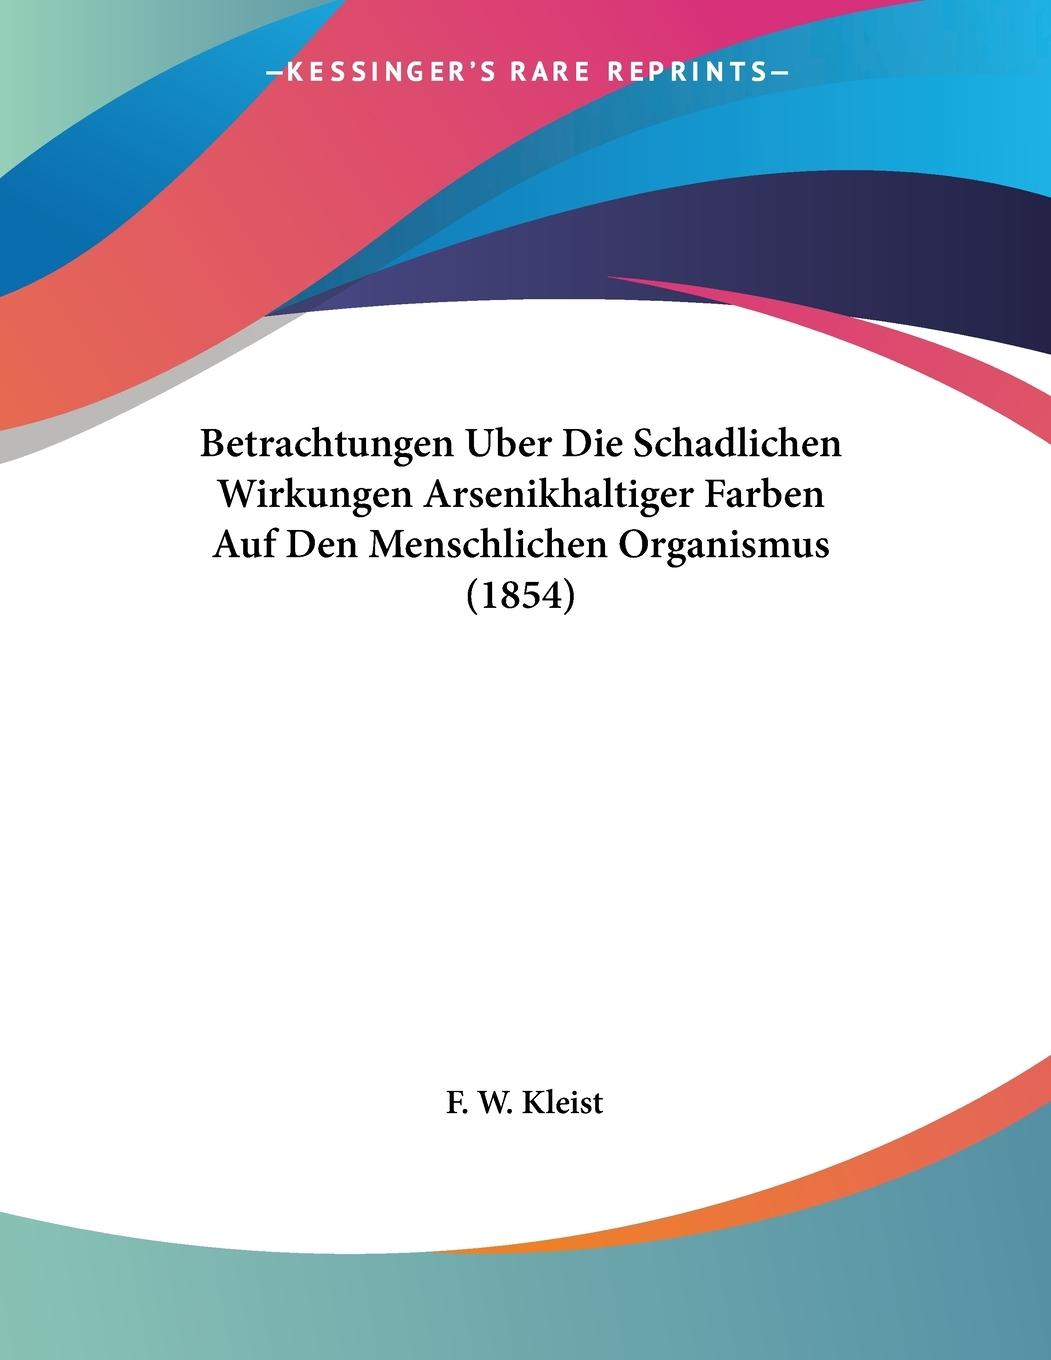 Betrachtungen Uber Die Schadlichen Wirkungen Arsenikhaltiger Farben Auf Den Menschlichen Organismus (1854) - Kleist, F. W.